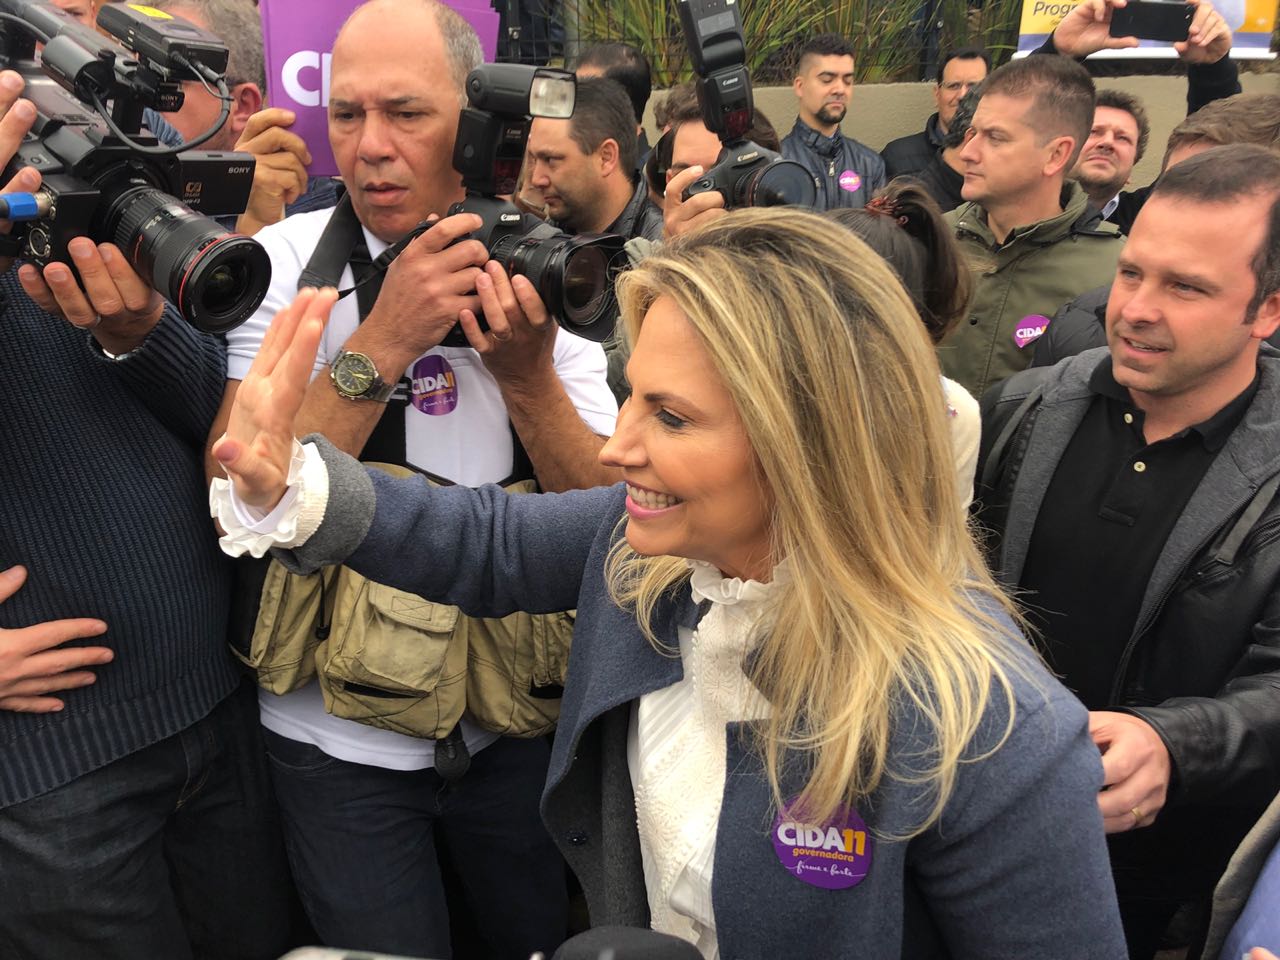  PP confirma candidatura de Cida Borghetti ao governo com apoio de Beto Richa